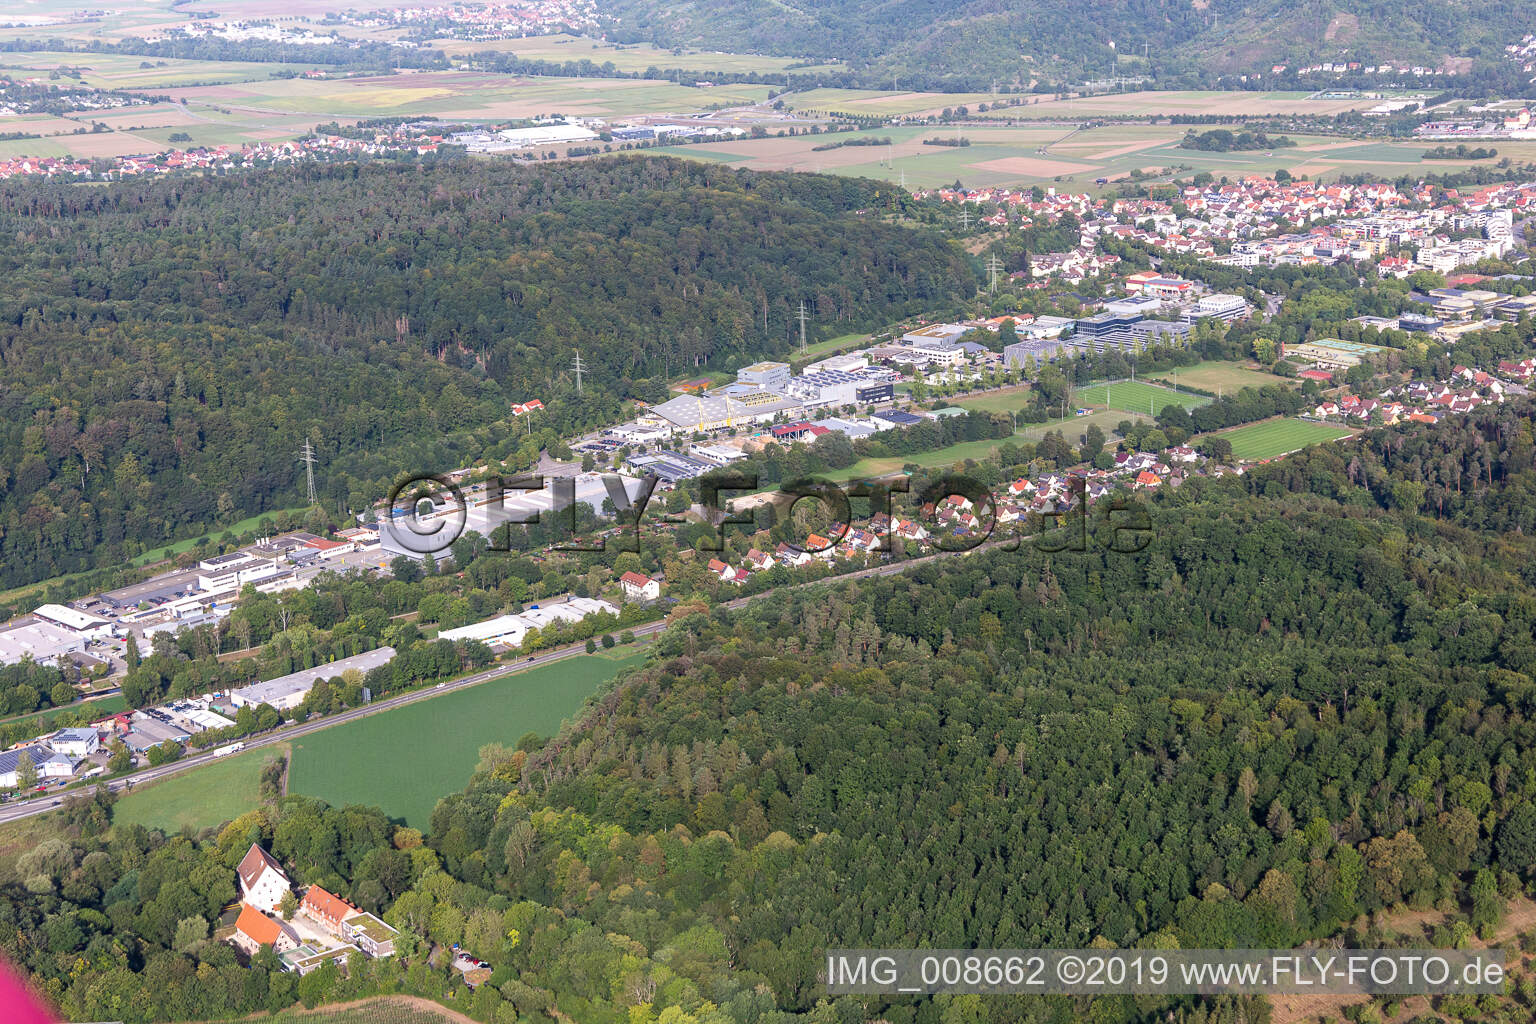 Vue aérienne de Cité-jardin à Kusterdingen dans le département Bade-Wurtemberg, Allemagne